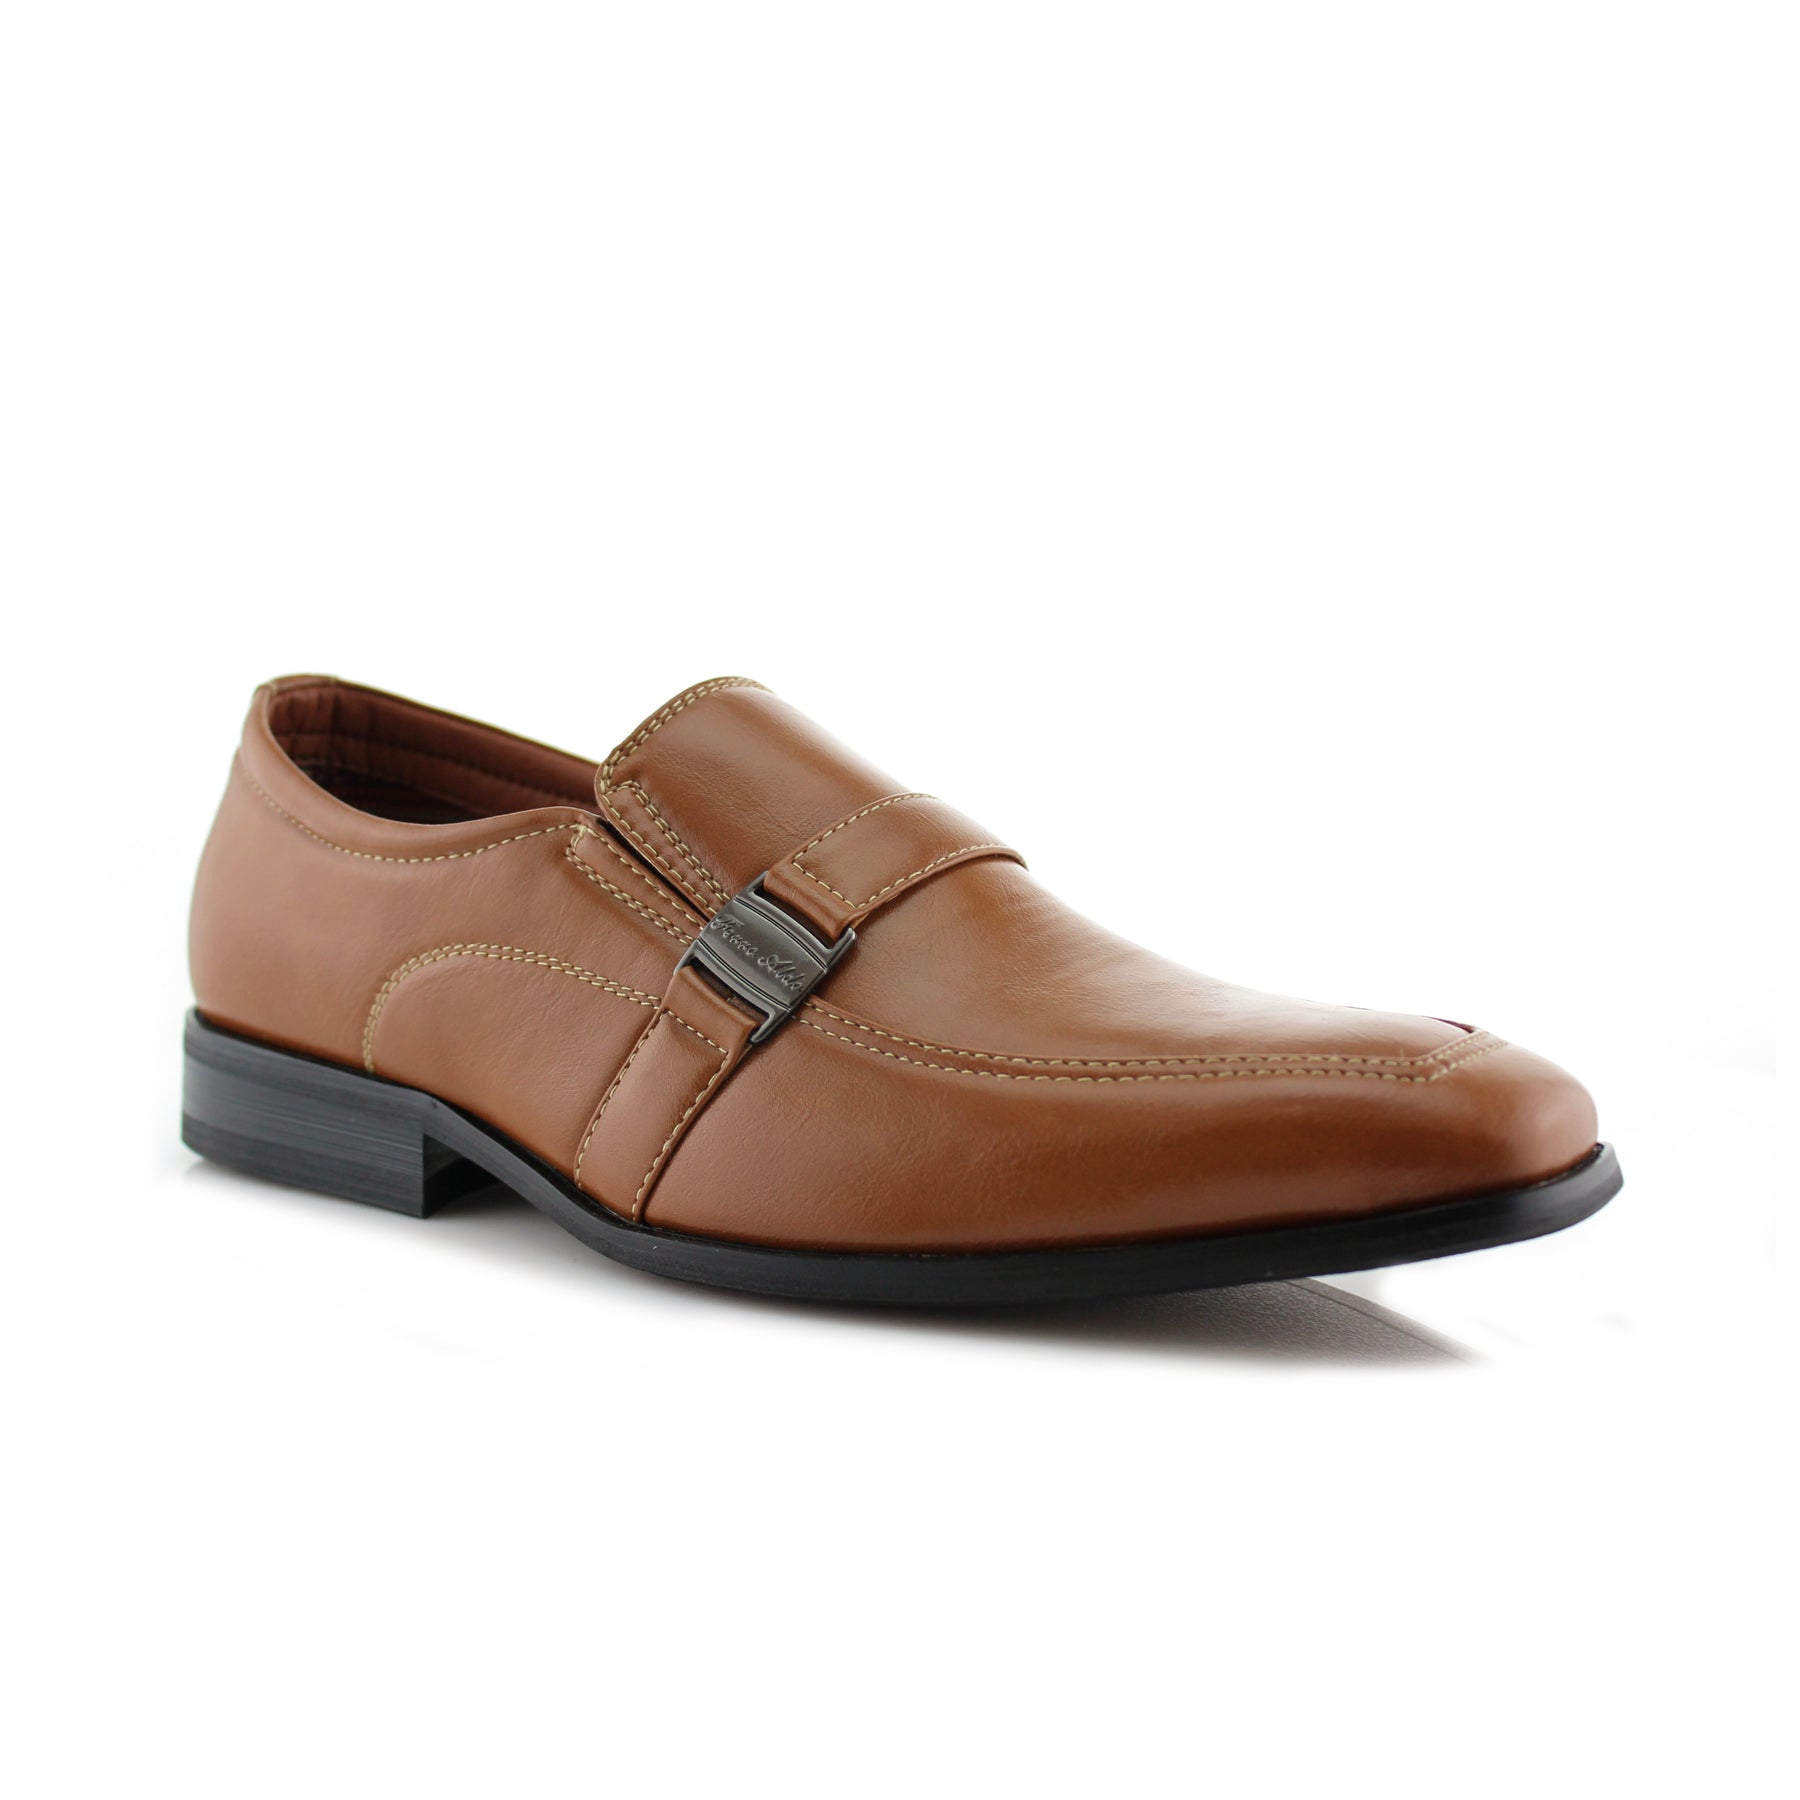 Ferro Aldo Buckle Loafers | Jesus by Ferro Aldo | Conal Footwear | Main Angle View